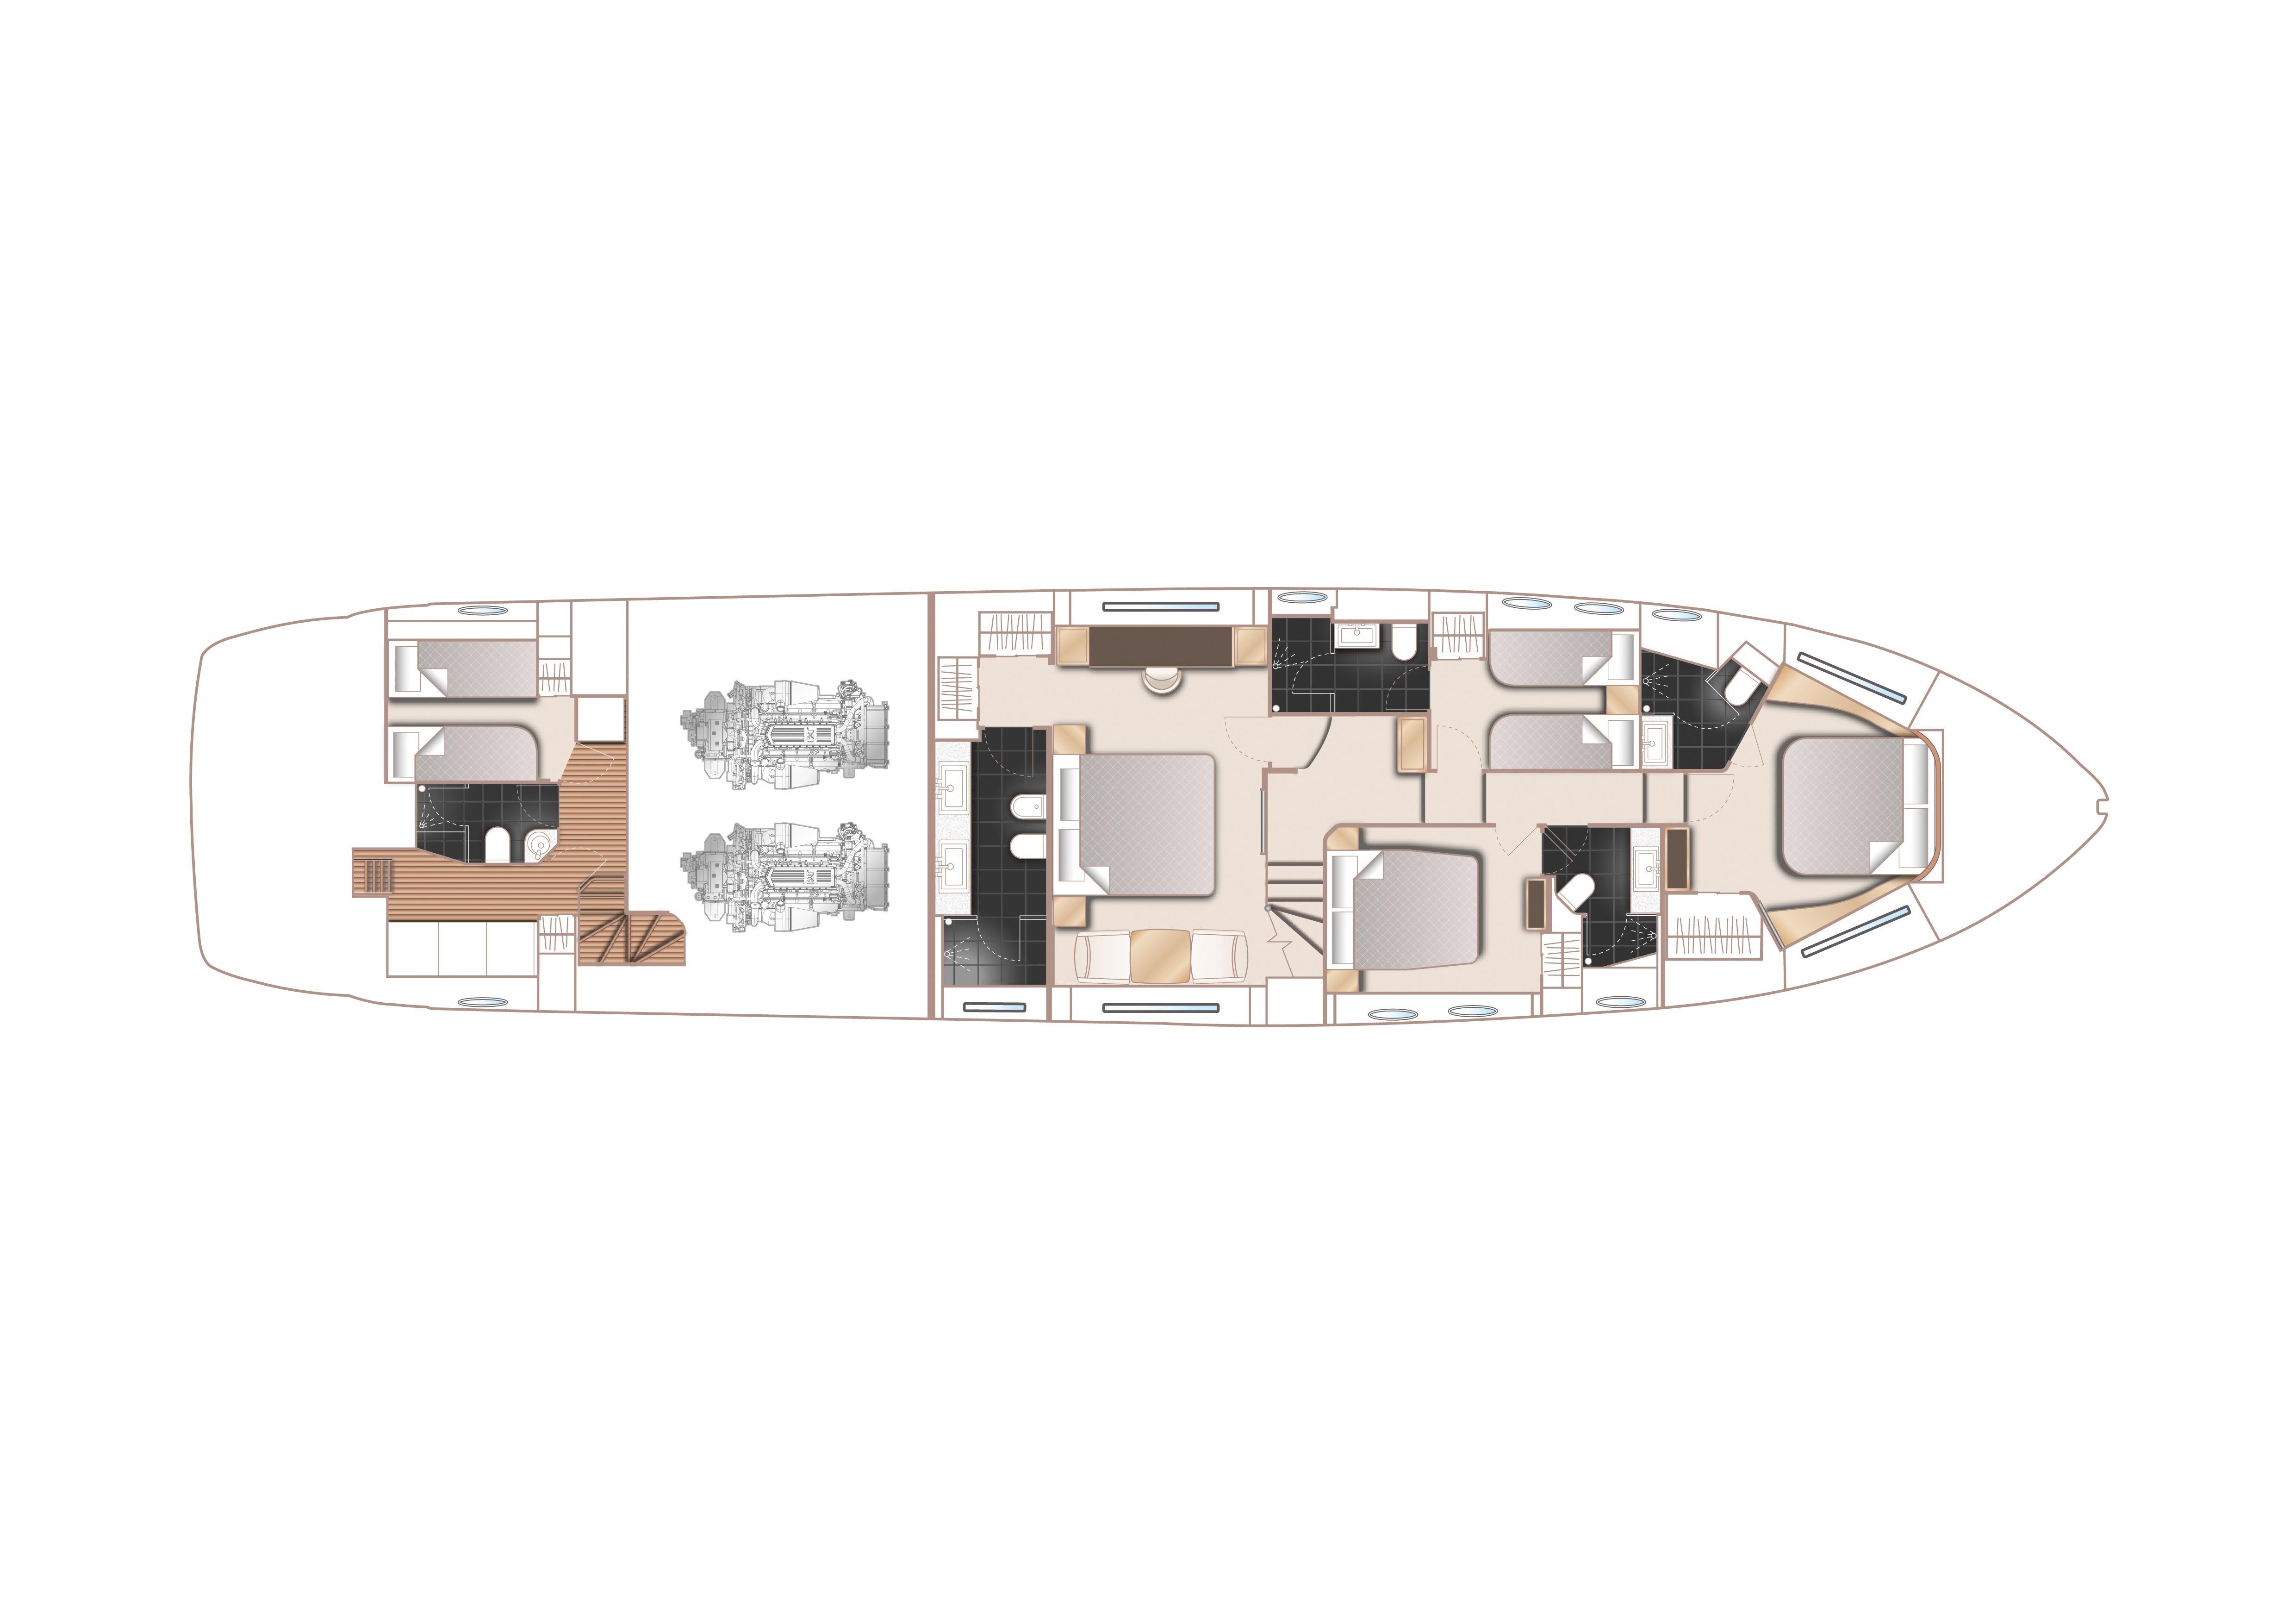 2015 Princess Flybridge 82 Motor Yacht